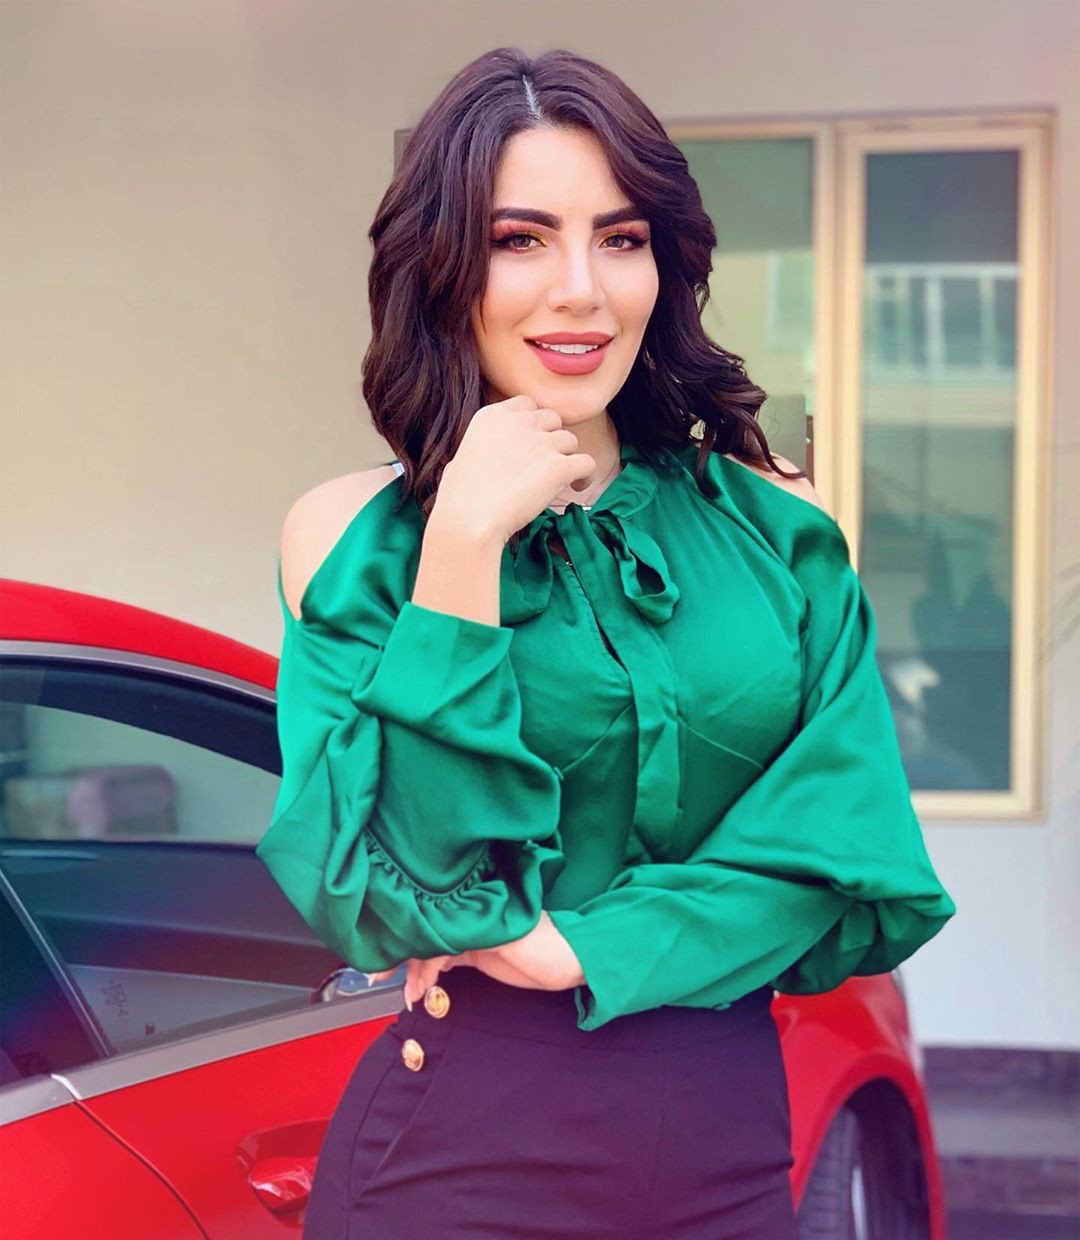 vestido de color turquesa con ropa formal, poses de sesión de fotos, sonrisa de labios: Ropa formal  